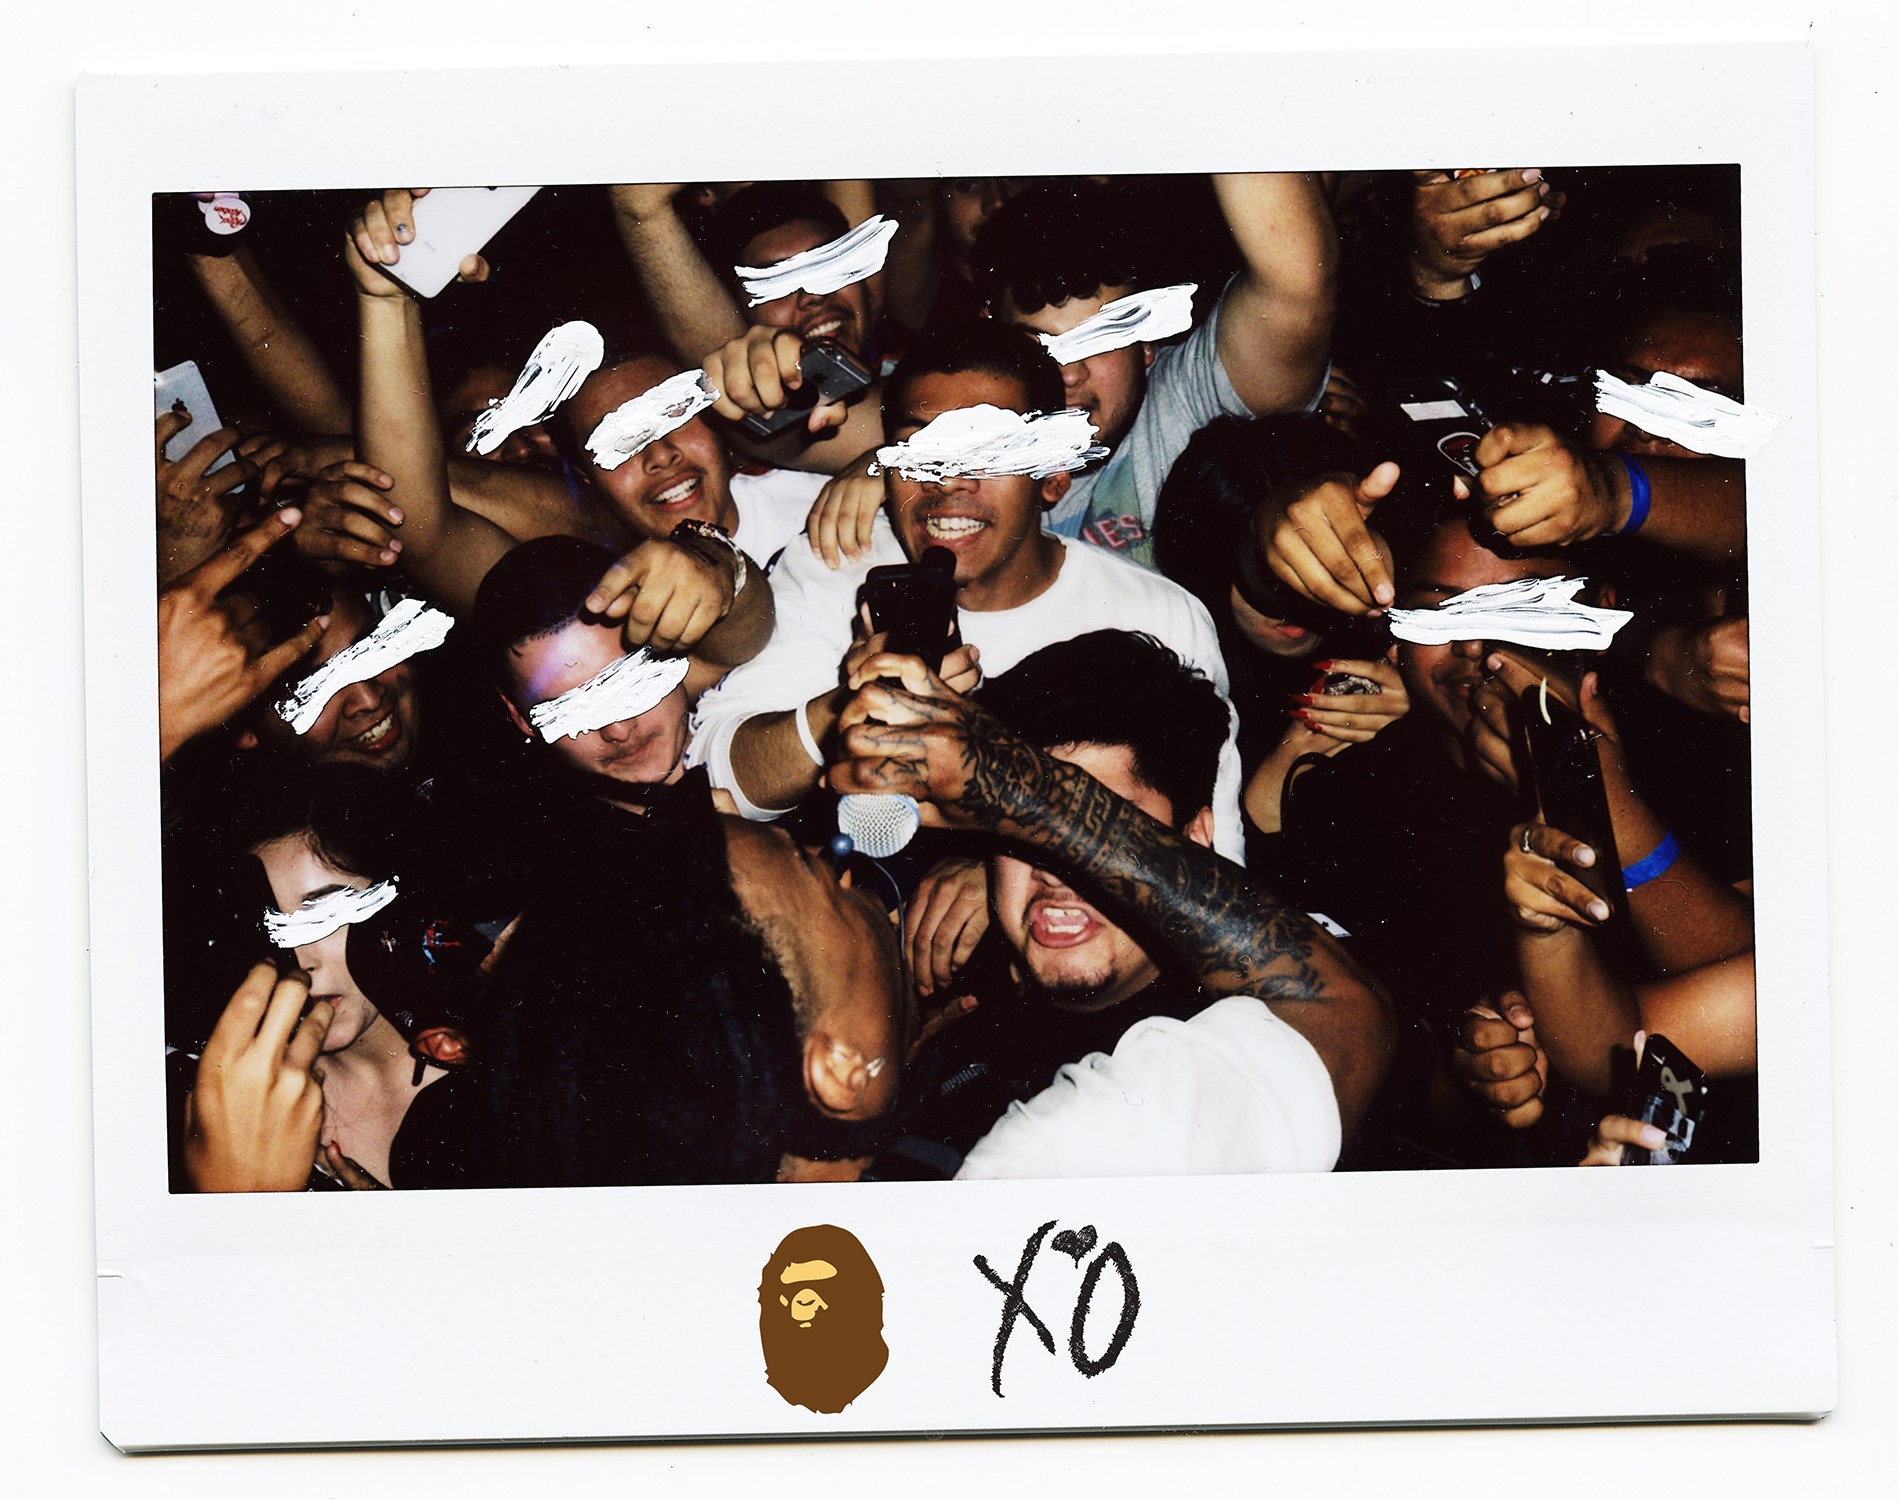 BAPE ✖️ XO The Weeknd 限定ティーシャツ